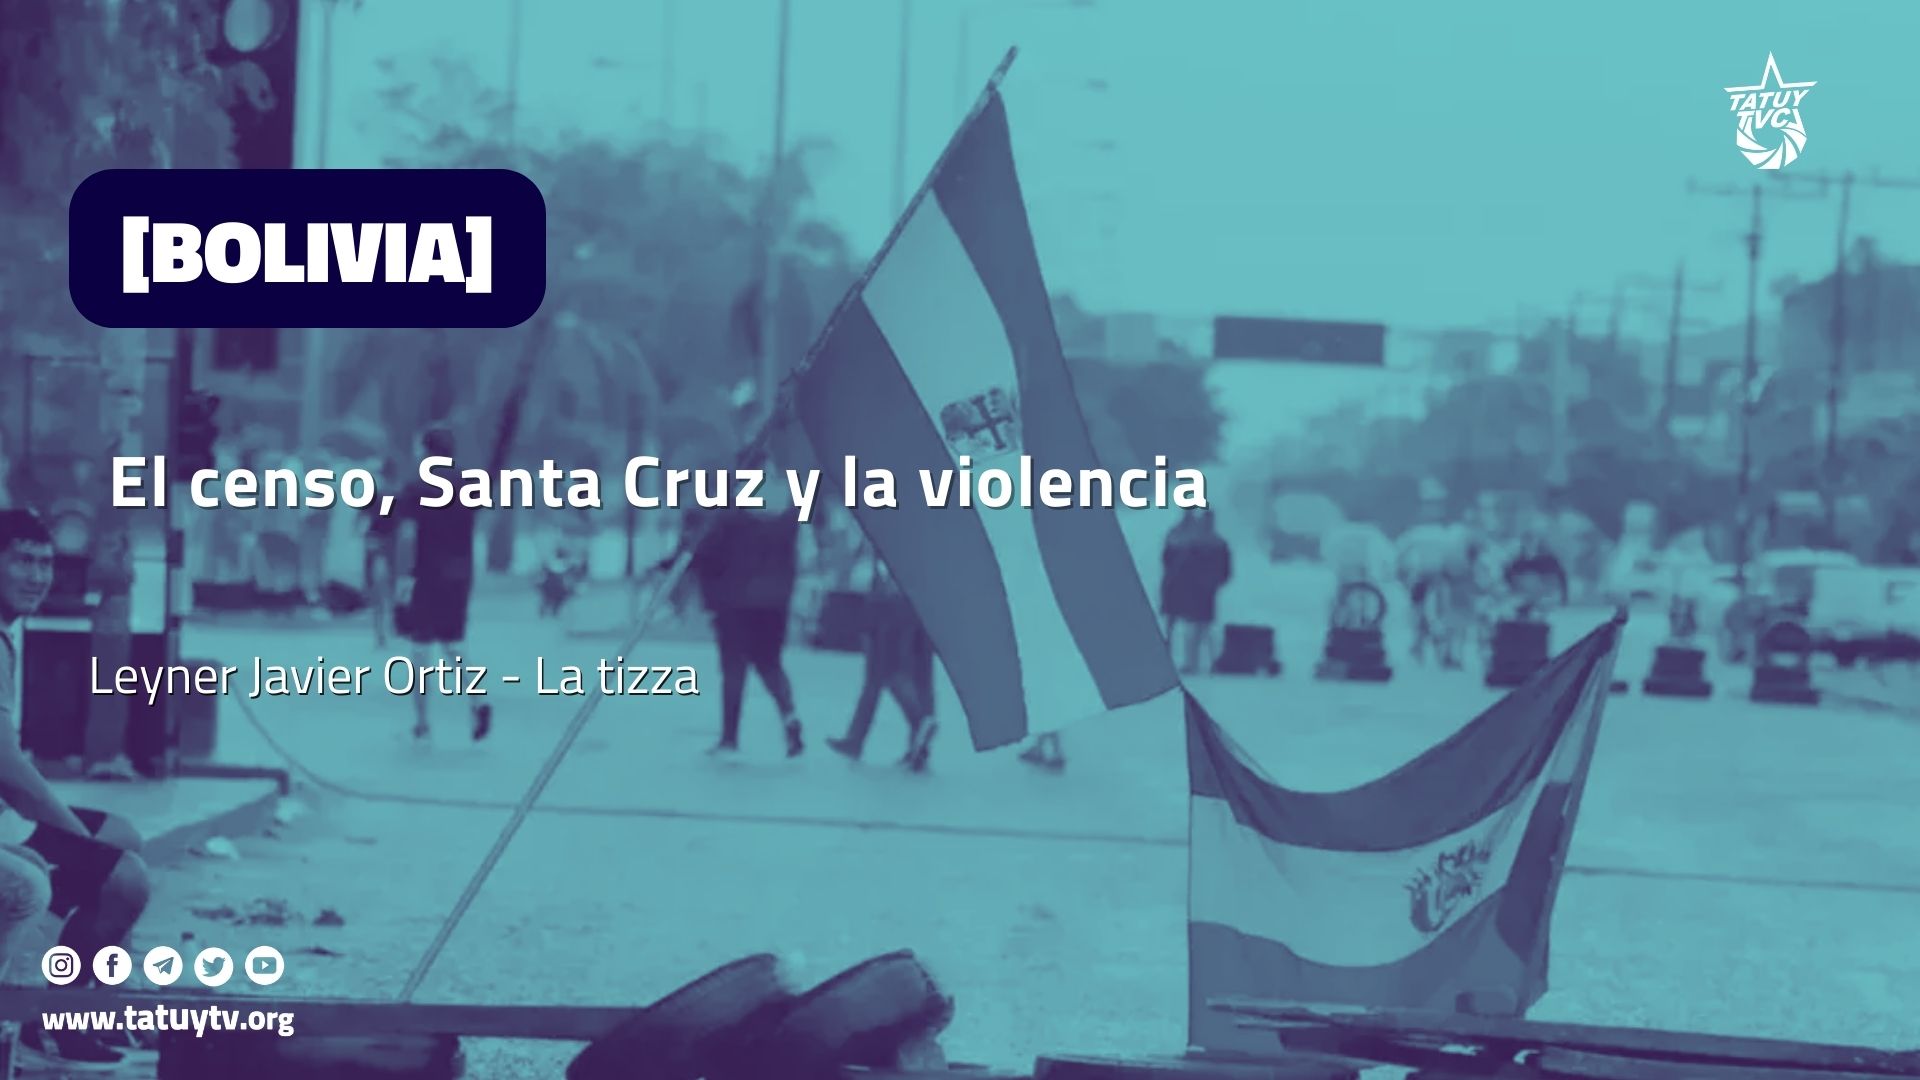 [BOLIVIA] El censo, Santa Cruz y la violencia